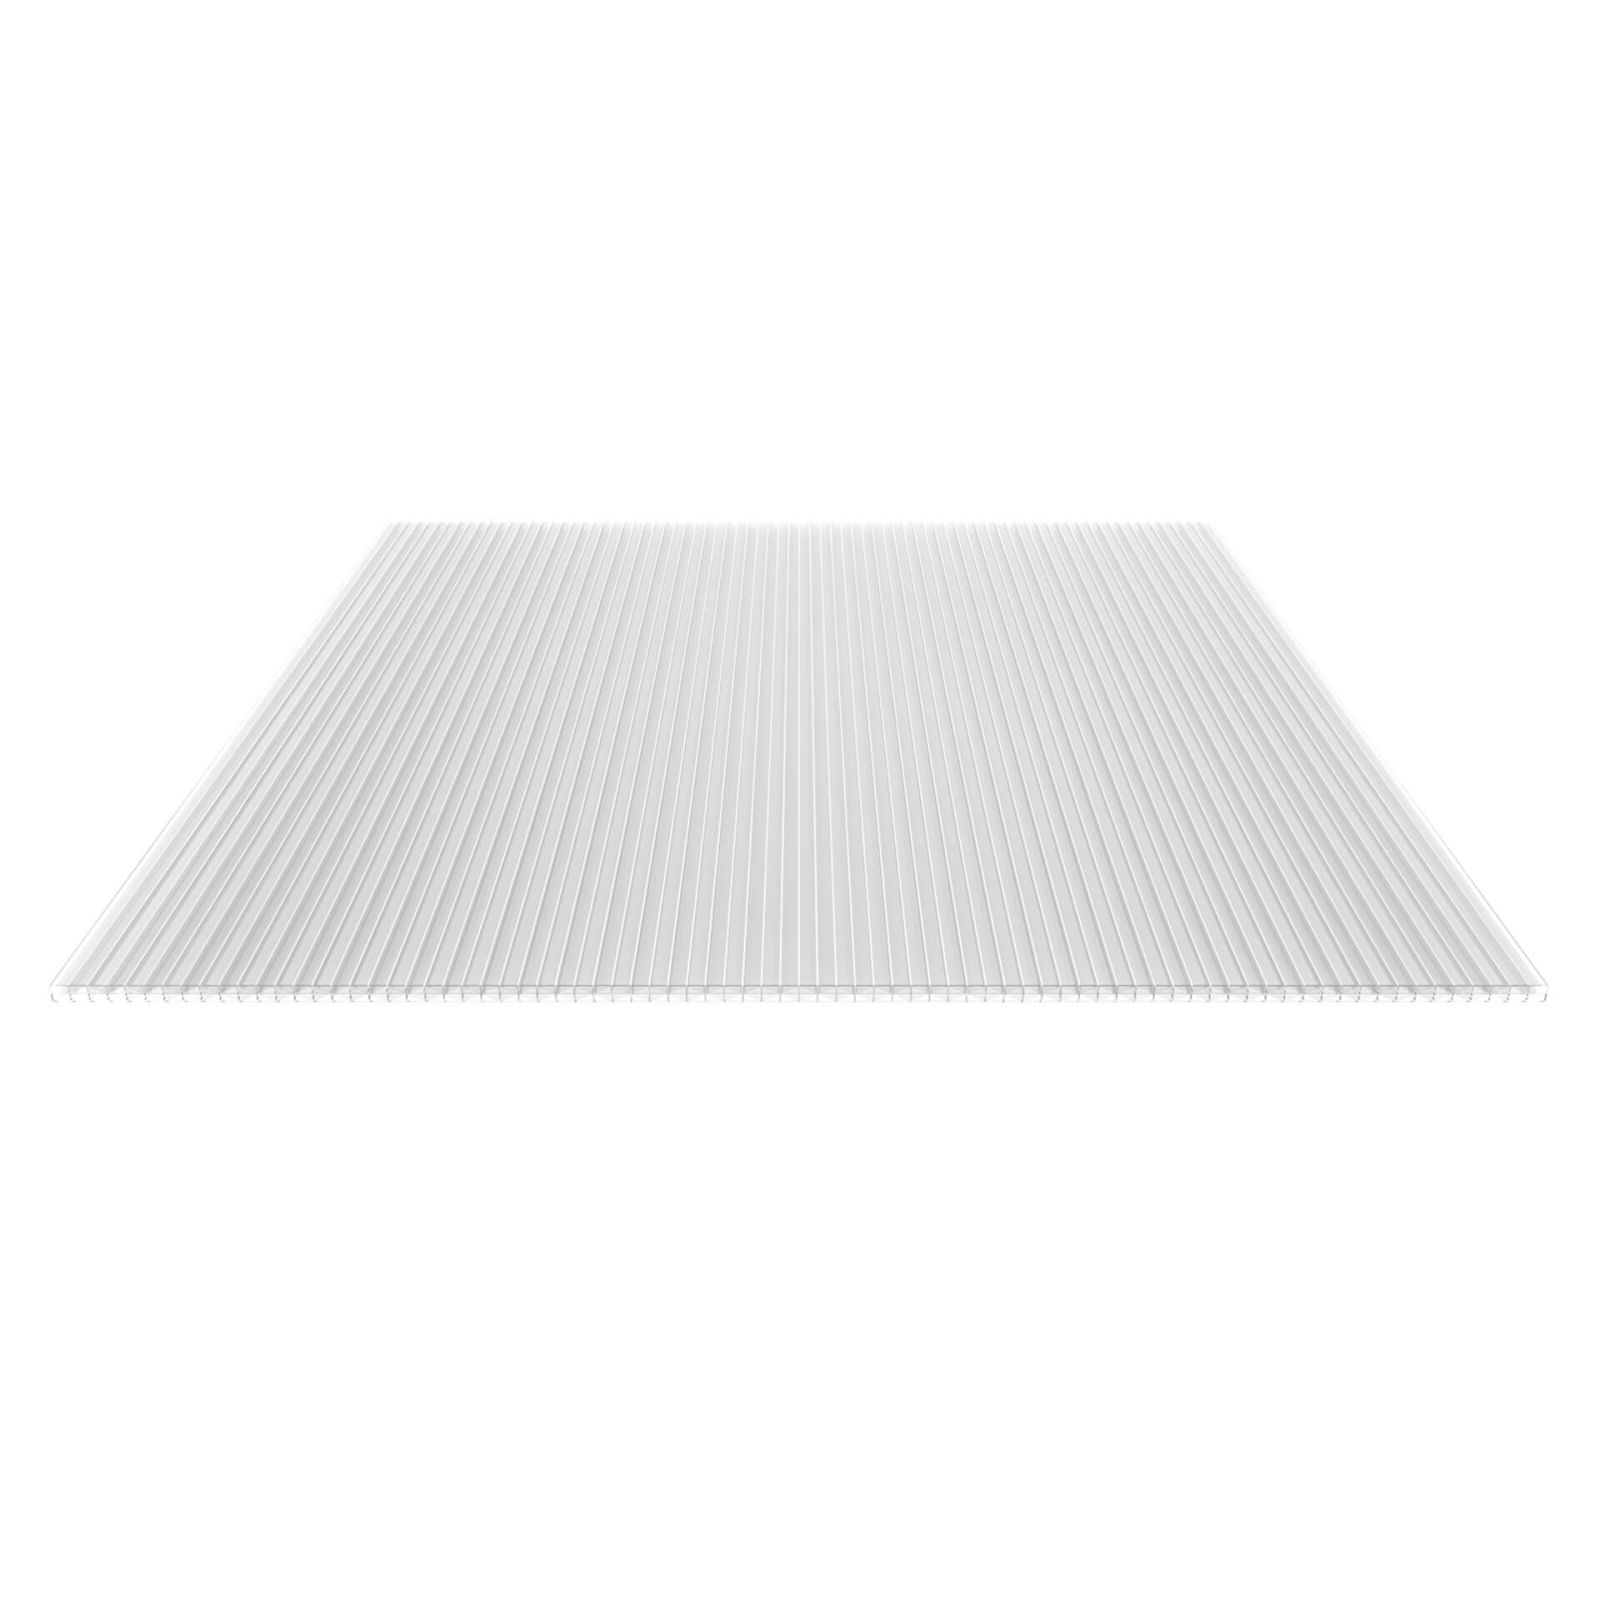 Polycarbonat Stegplatte | 16 mm | Profil DUO | Sparpaket | Plattenbreite 1200 mm | Klar | Extra stark | Breite 3,75 m | Länge 2,00 m #6